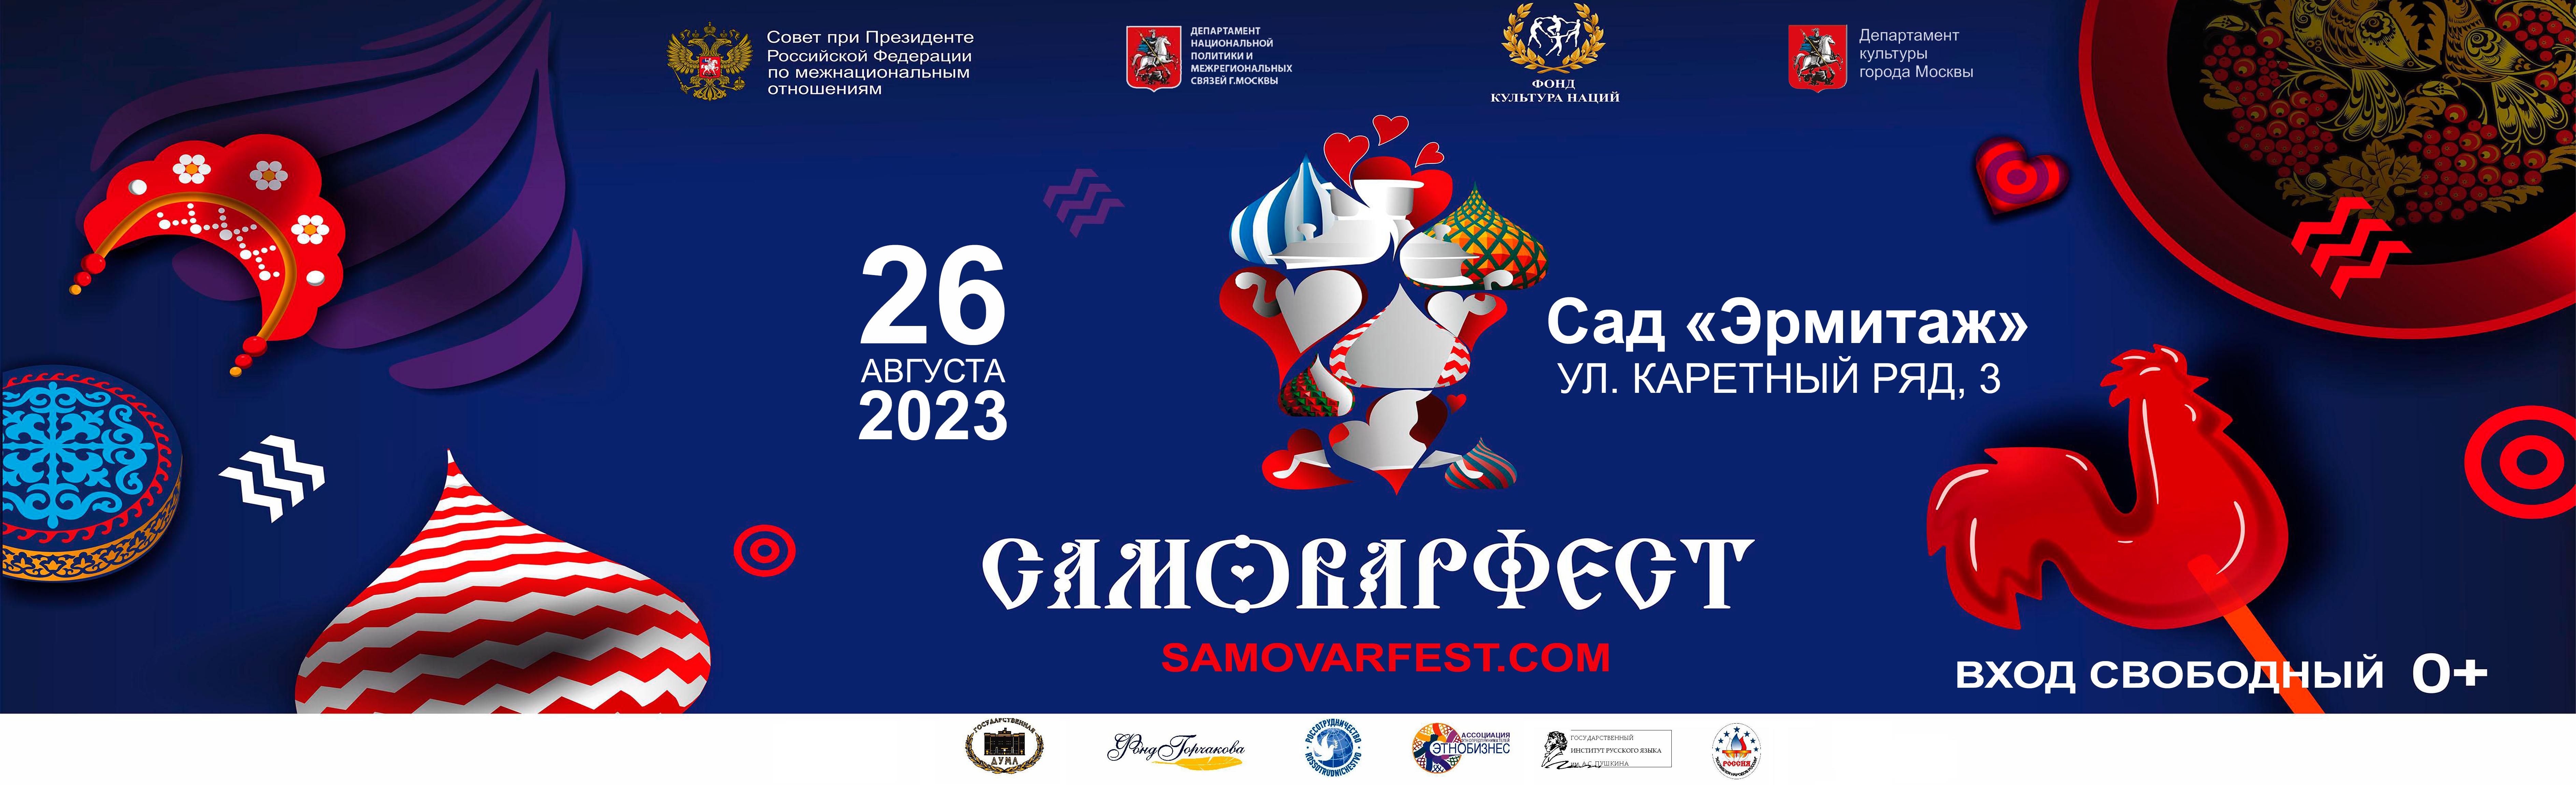 26 августа в Москве пройдет 8-ой фестиваль гостеприимства САМОВАРФЕСТ